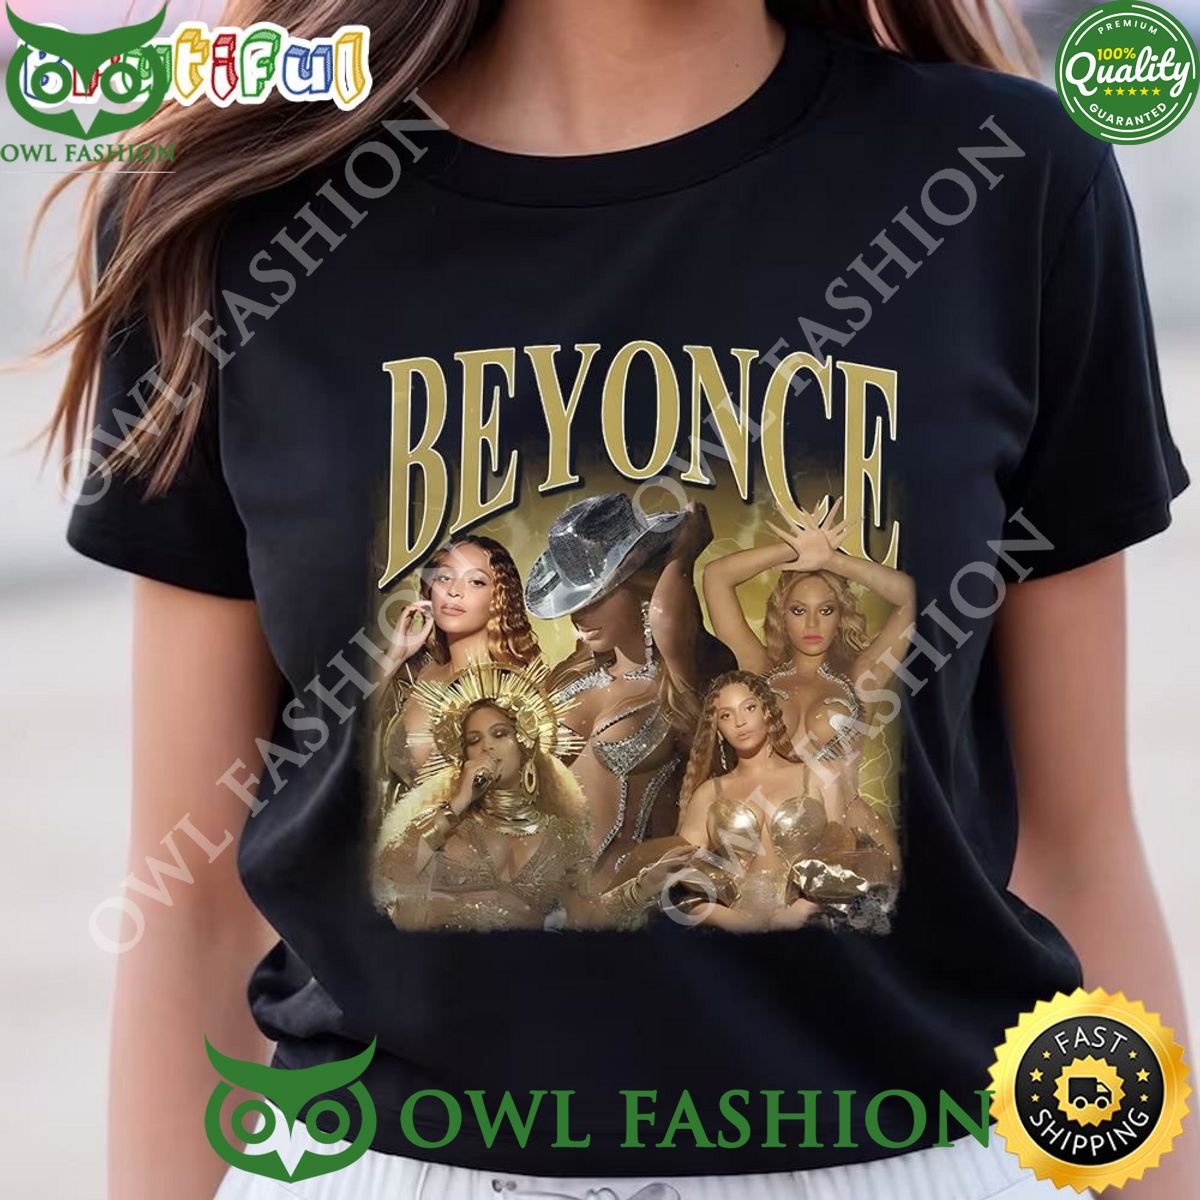 Beyonce Renaissance Tour T Shirt Elegant picture.